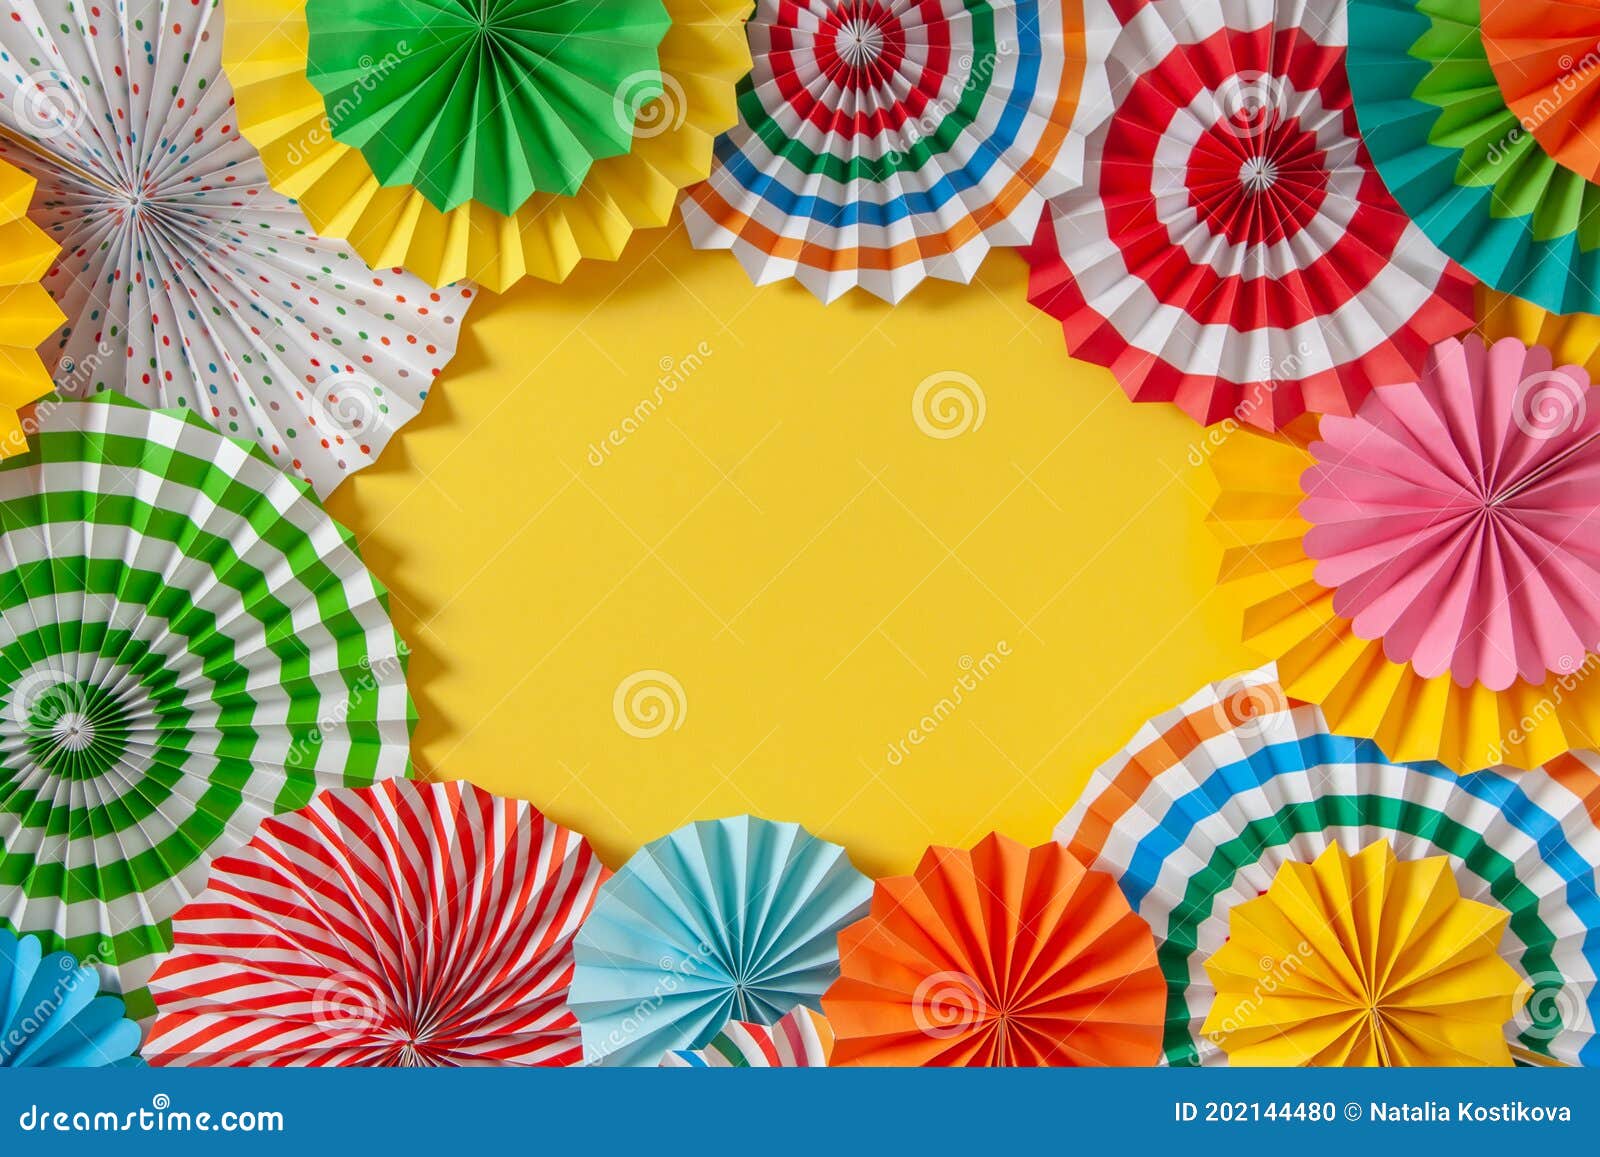 Decoración colorida de guirnaldas para carnaval, vacaciones, cumpleaños y  festivales.